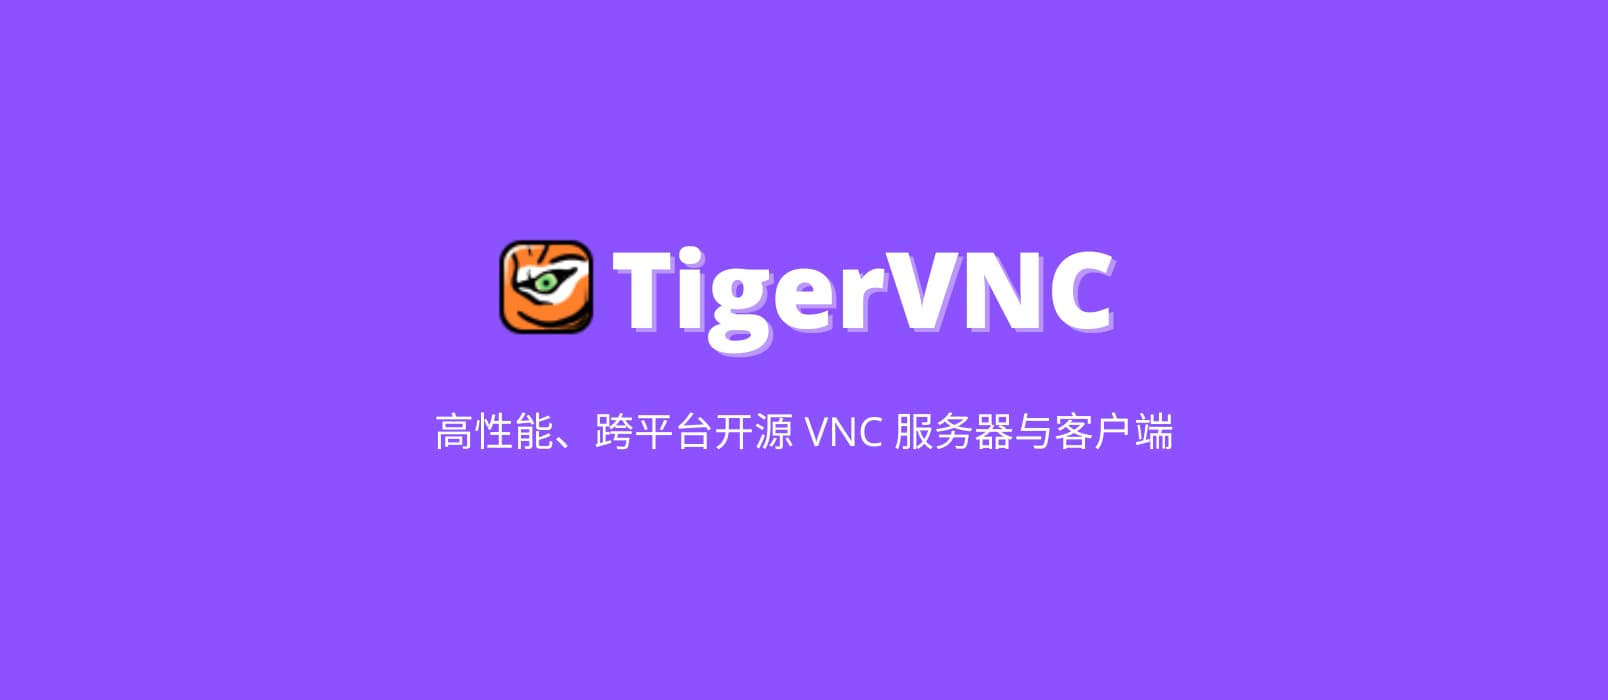 TigerVNC – 高性能、跨平台开源 VNC 服务器与客户端